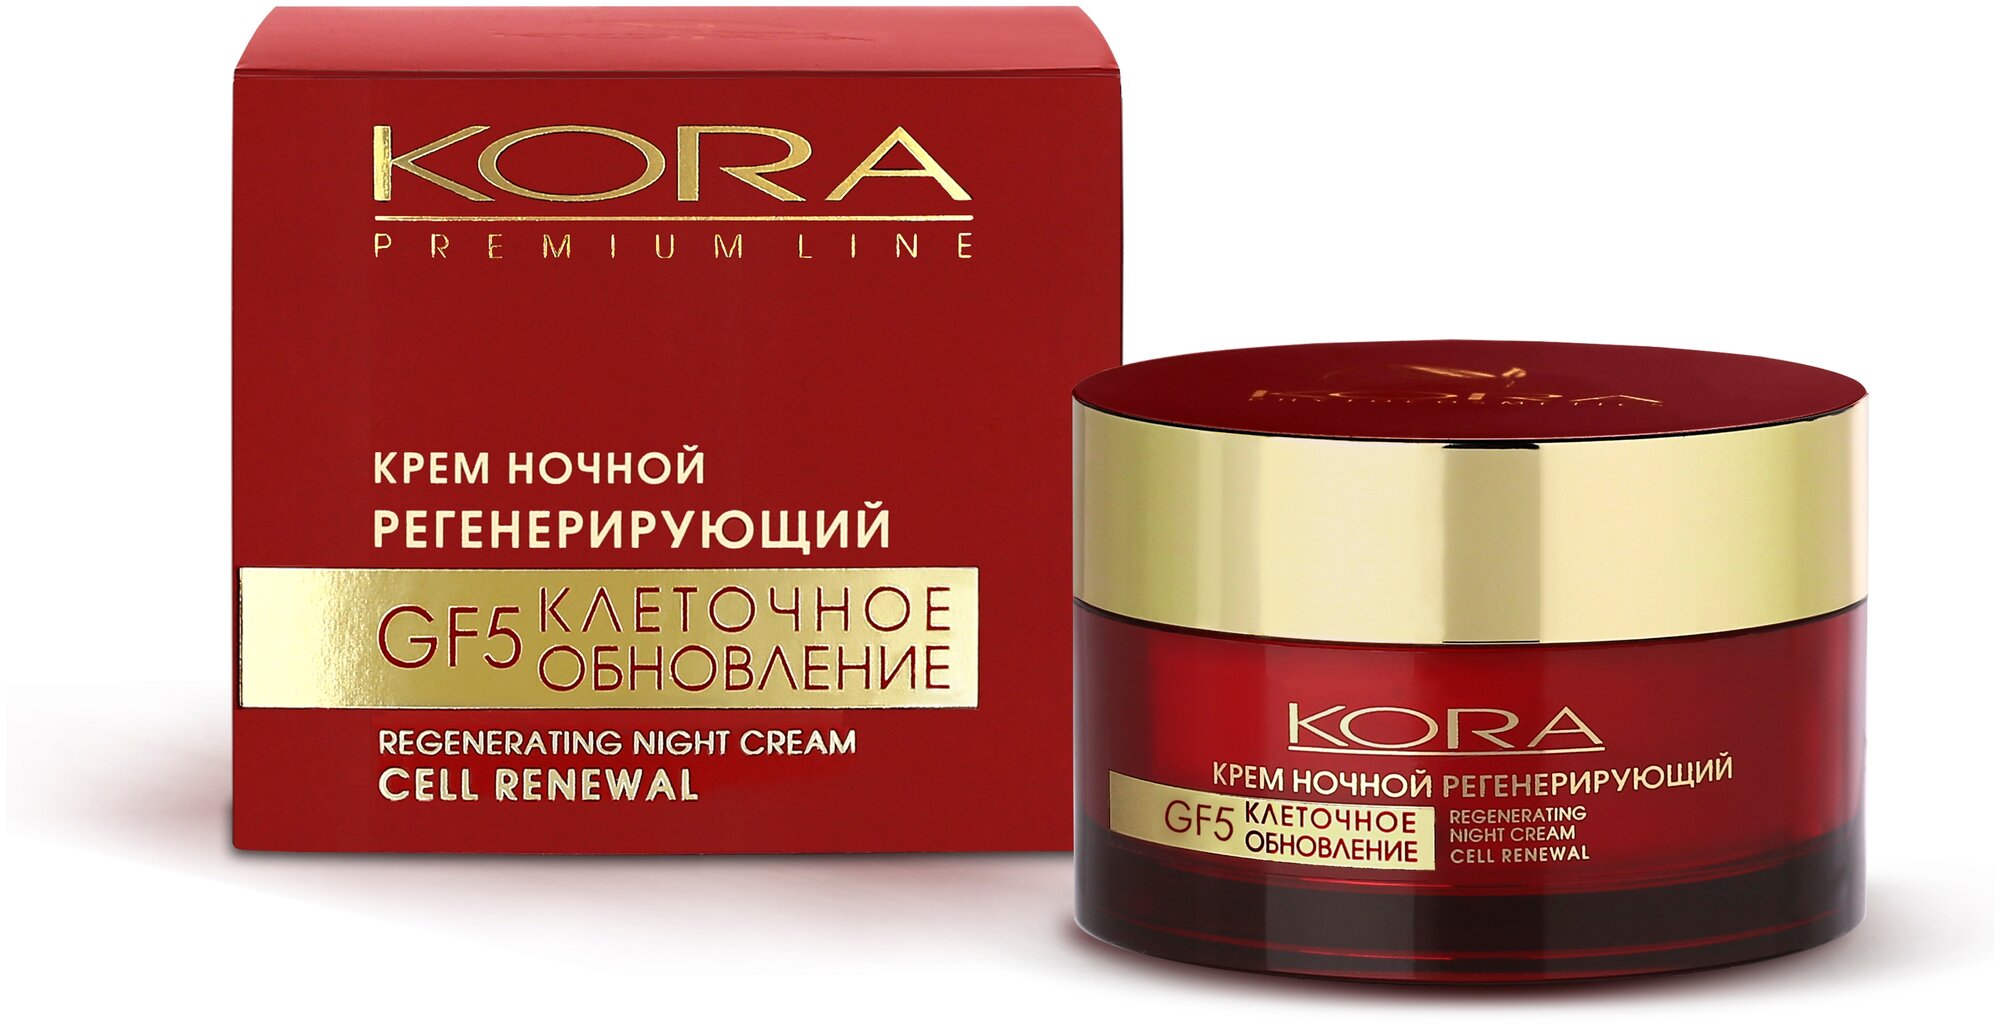 Kora Premium Line крем ночной регенерирующий GF5 клеточное обновление